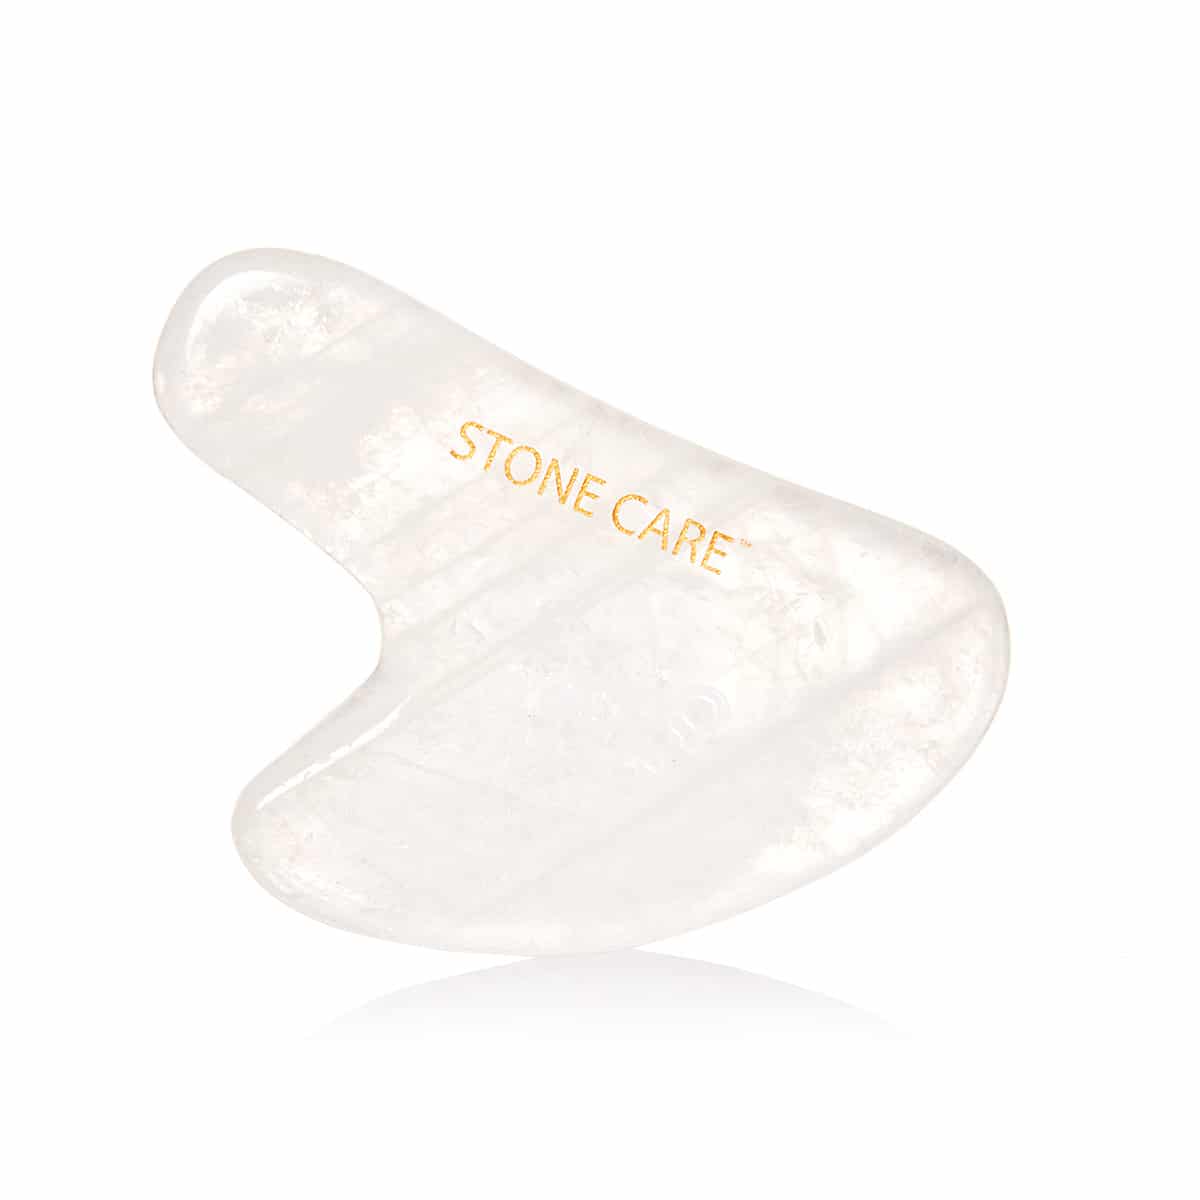 Kamień płytka gua sha z kryształu górskiego - STONE CARE